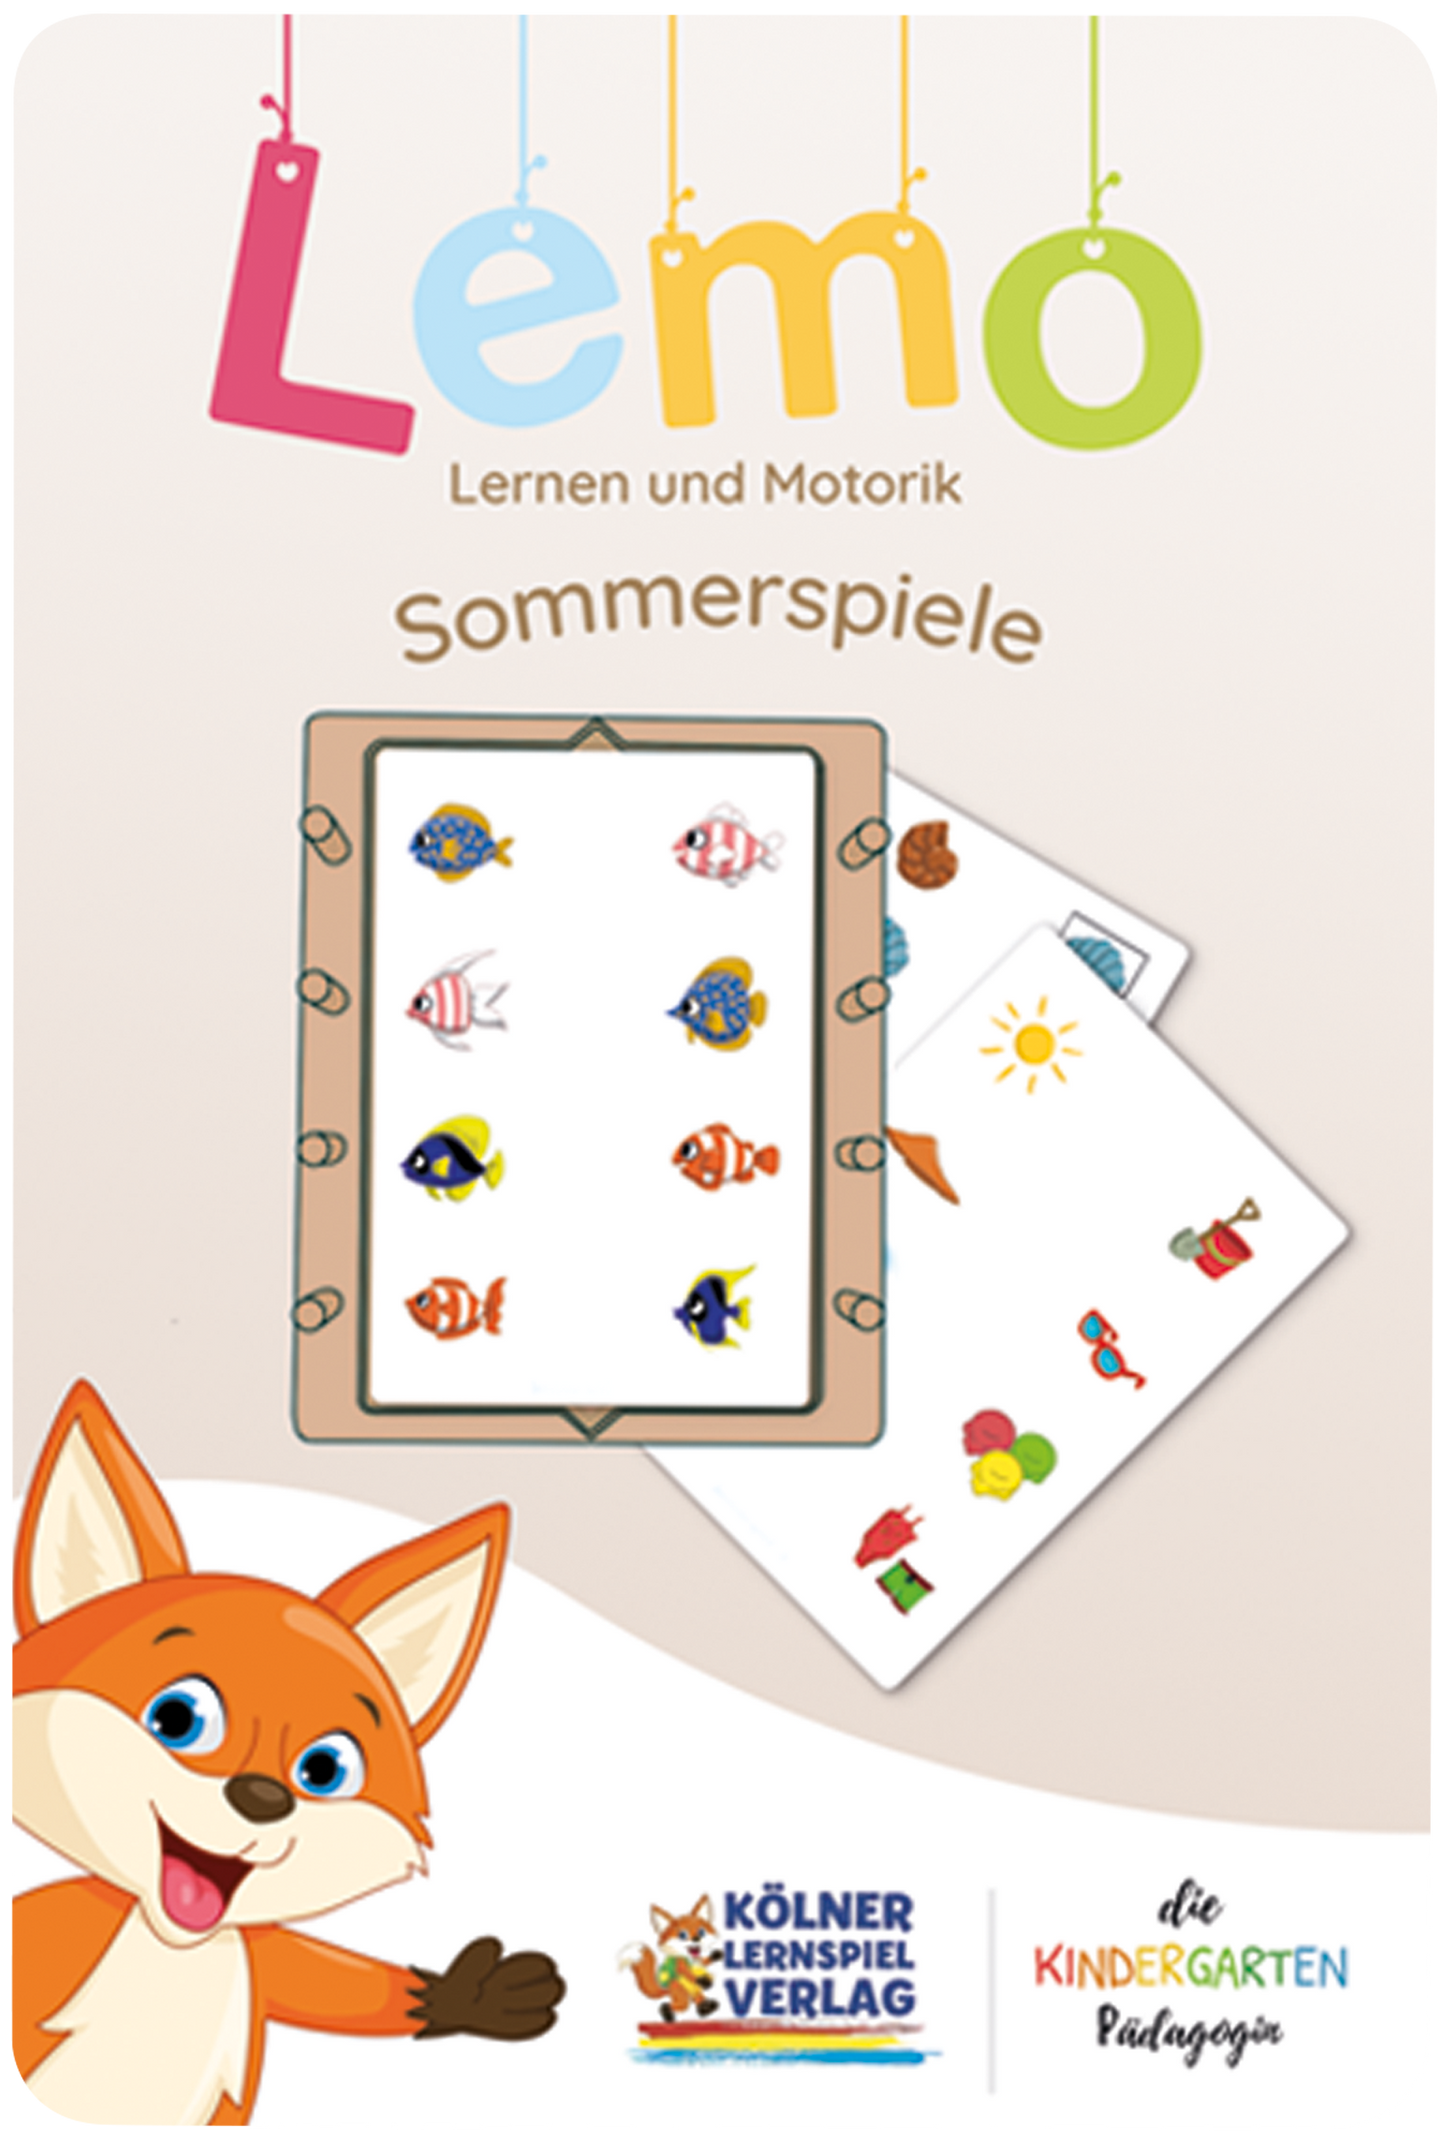 Lemo deck of summer games